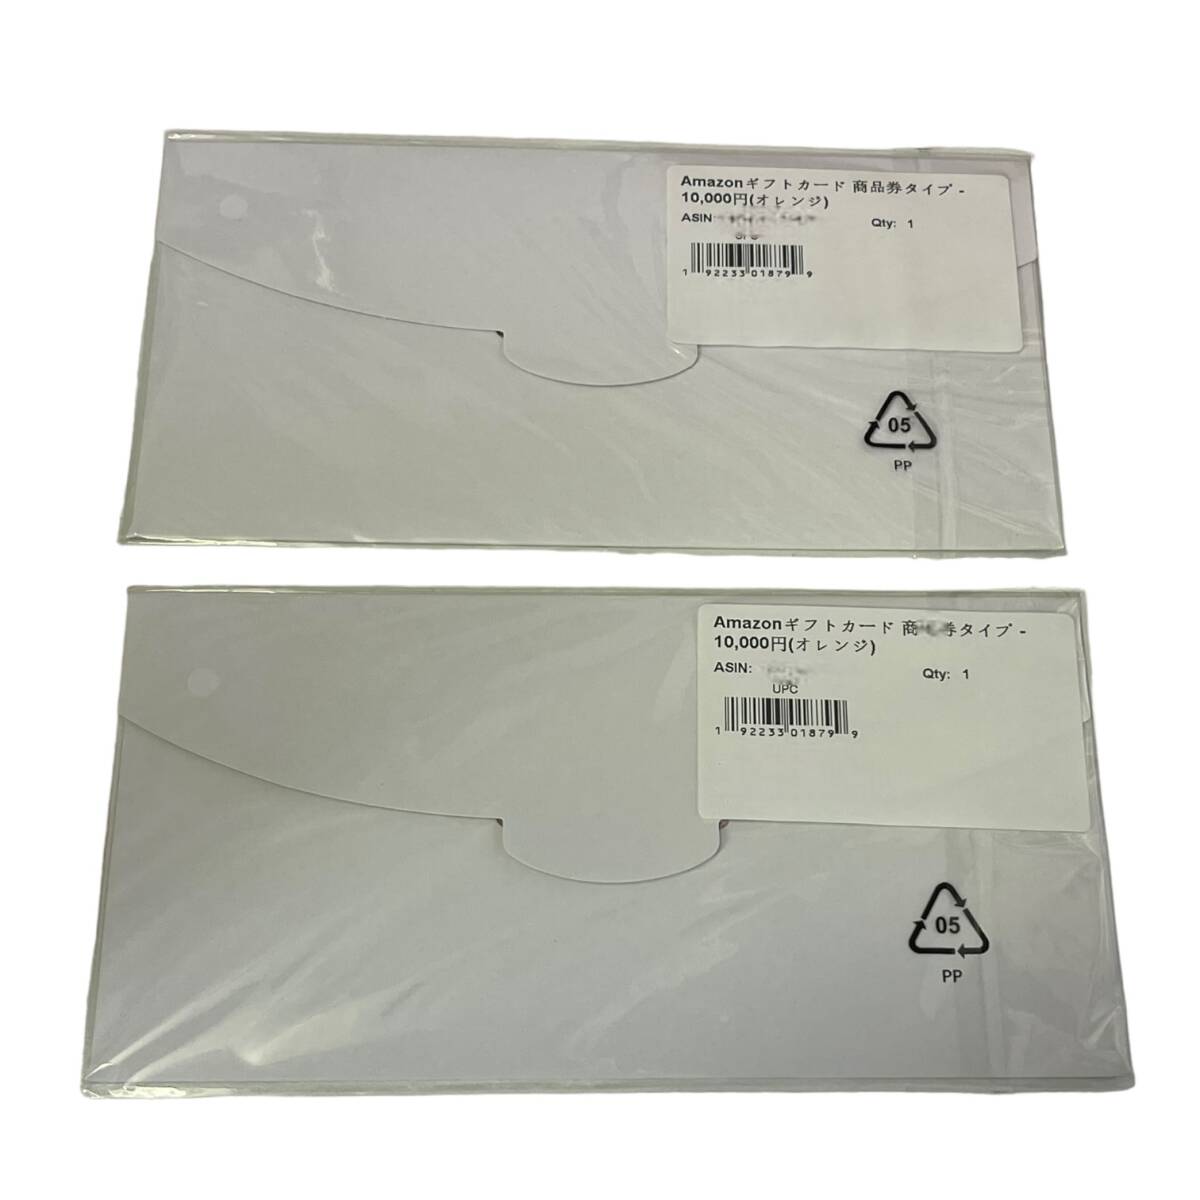 [ не использовался ] Amazon подарок карта товар талон модель 10000 иен x2 листов всего :20000 иен Amazon товар талон L64870RF